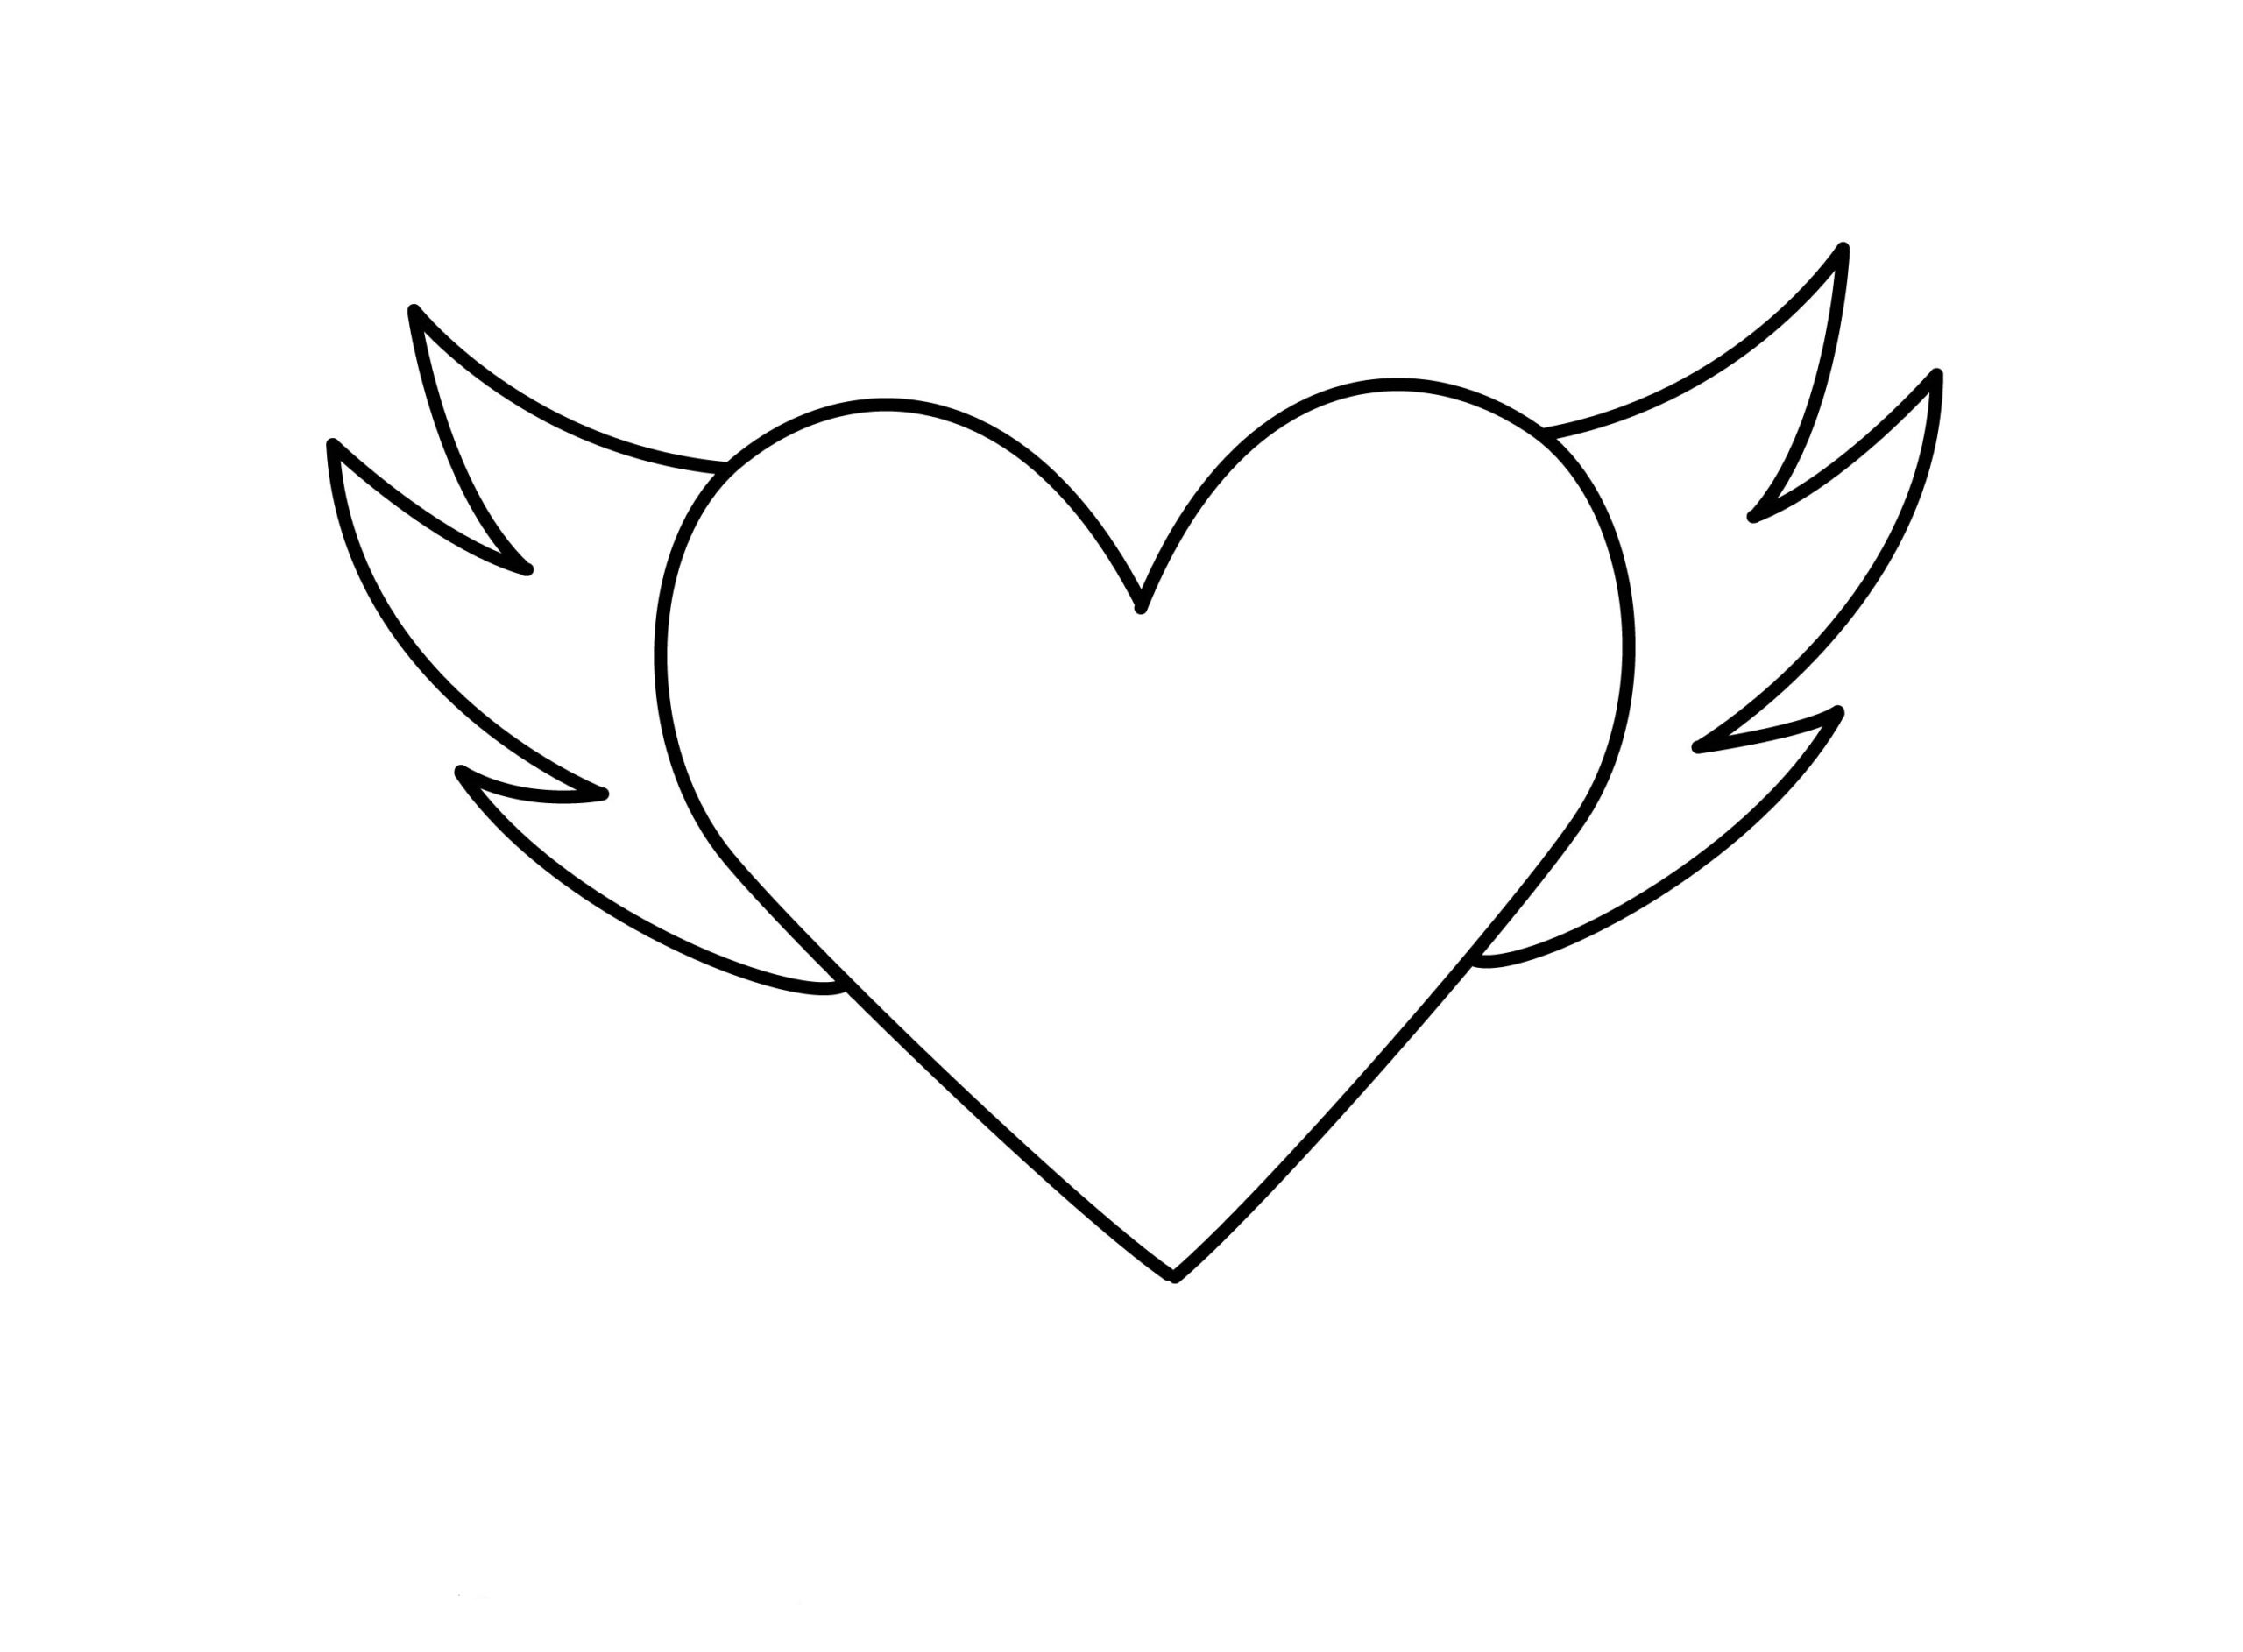 Hình vẽ trái tim: Hãy chiêm ngưỡng hình vẽ trái tim đầy ý nghĩa. Hình ảnh này sẽ đưa bạn đến thế giới tình yêu và cảm xúc dễ chịu trong lòng.